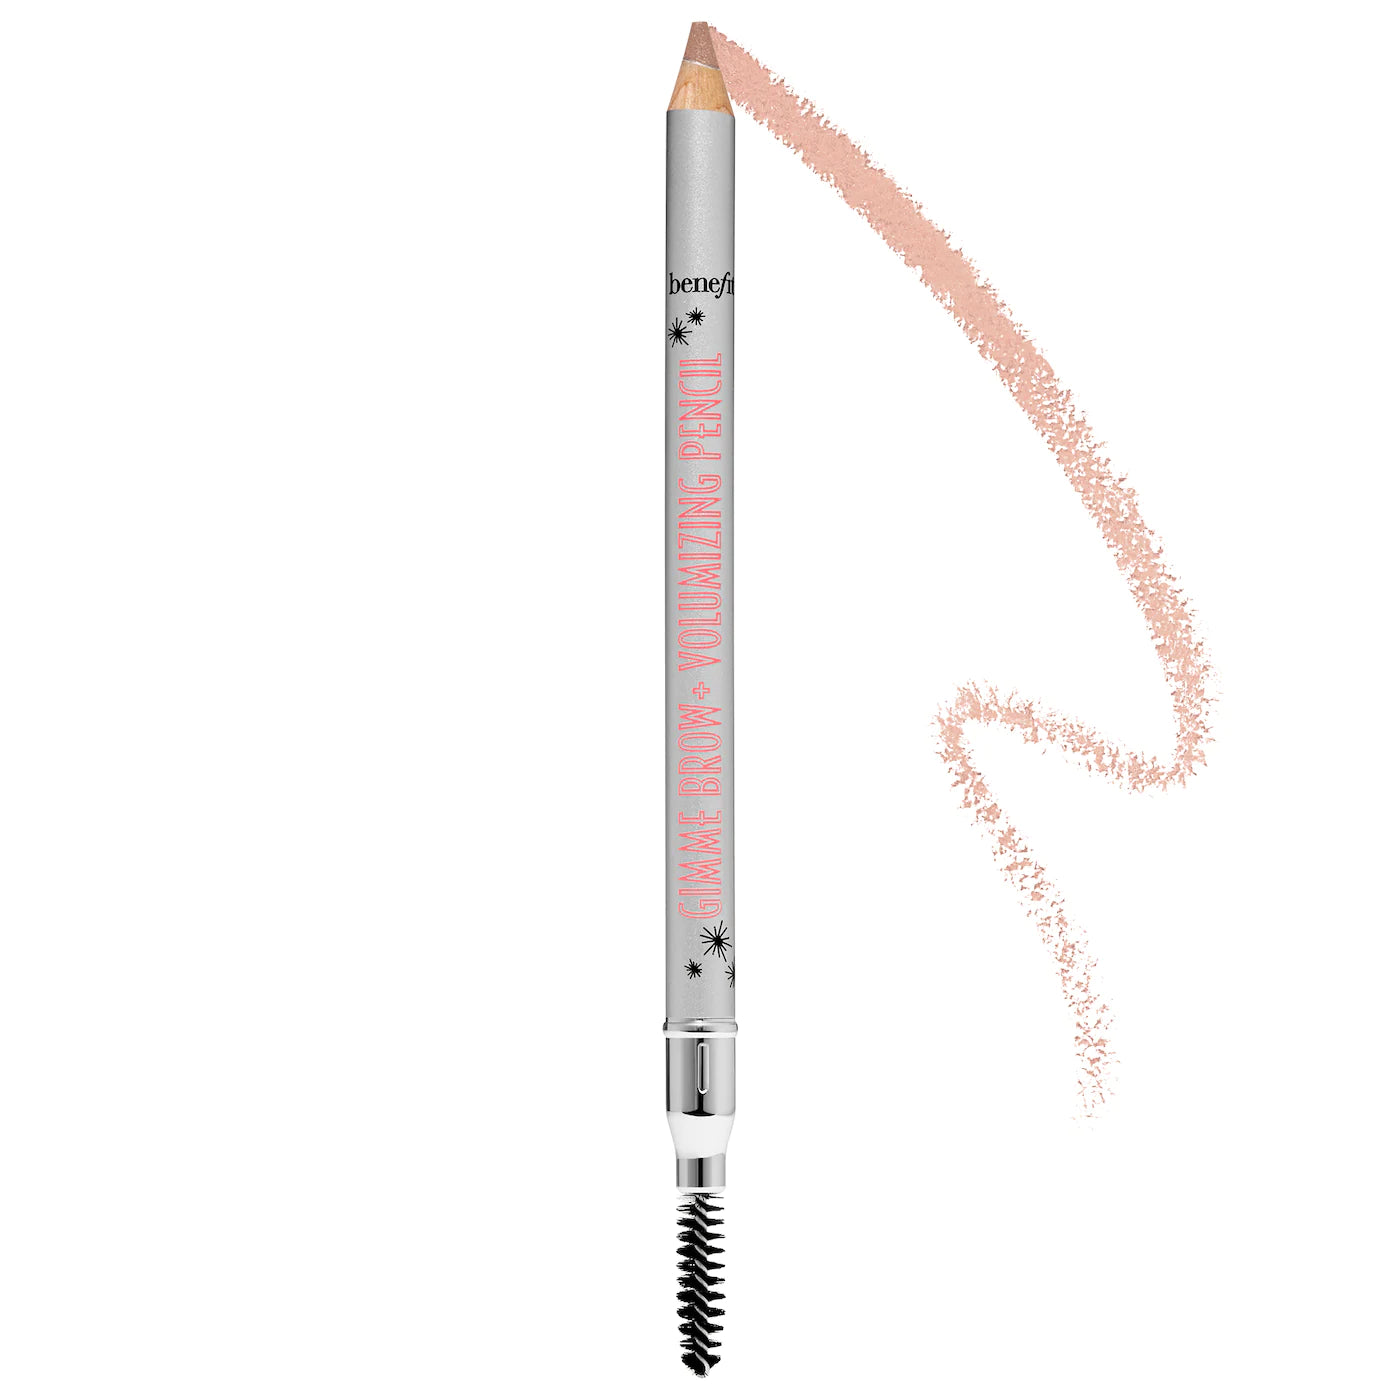 Benefit - Gimme Brow+ Volumizing  Fiber Eyebrow Pencil | 1.19 g